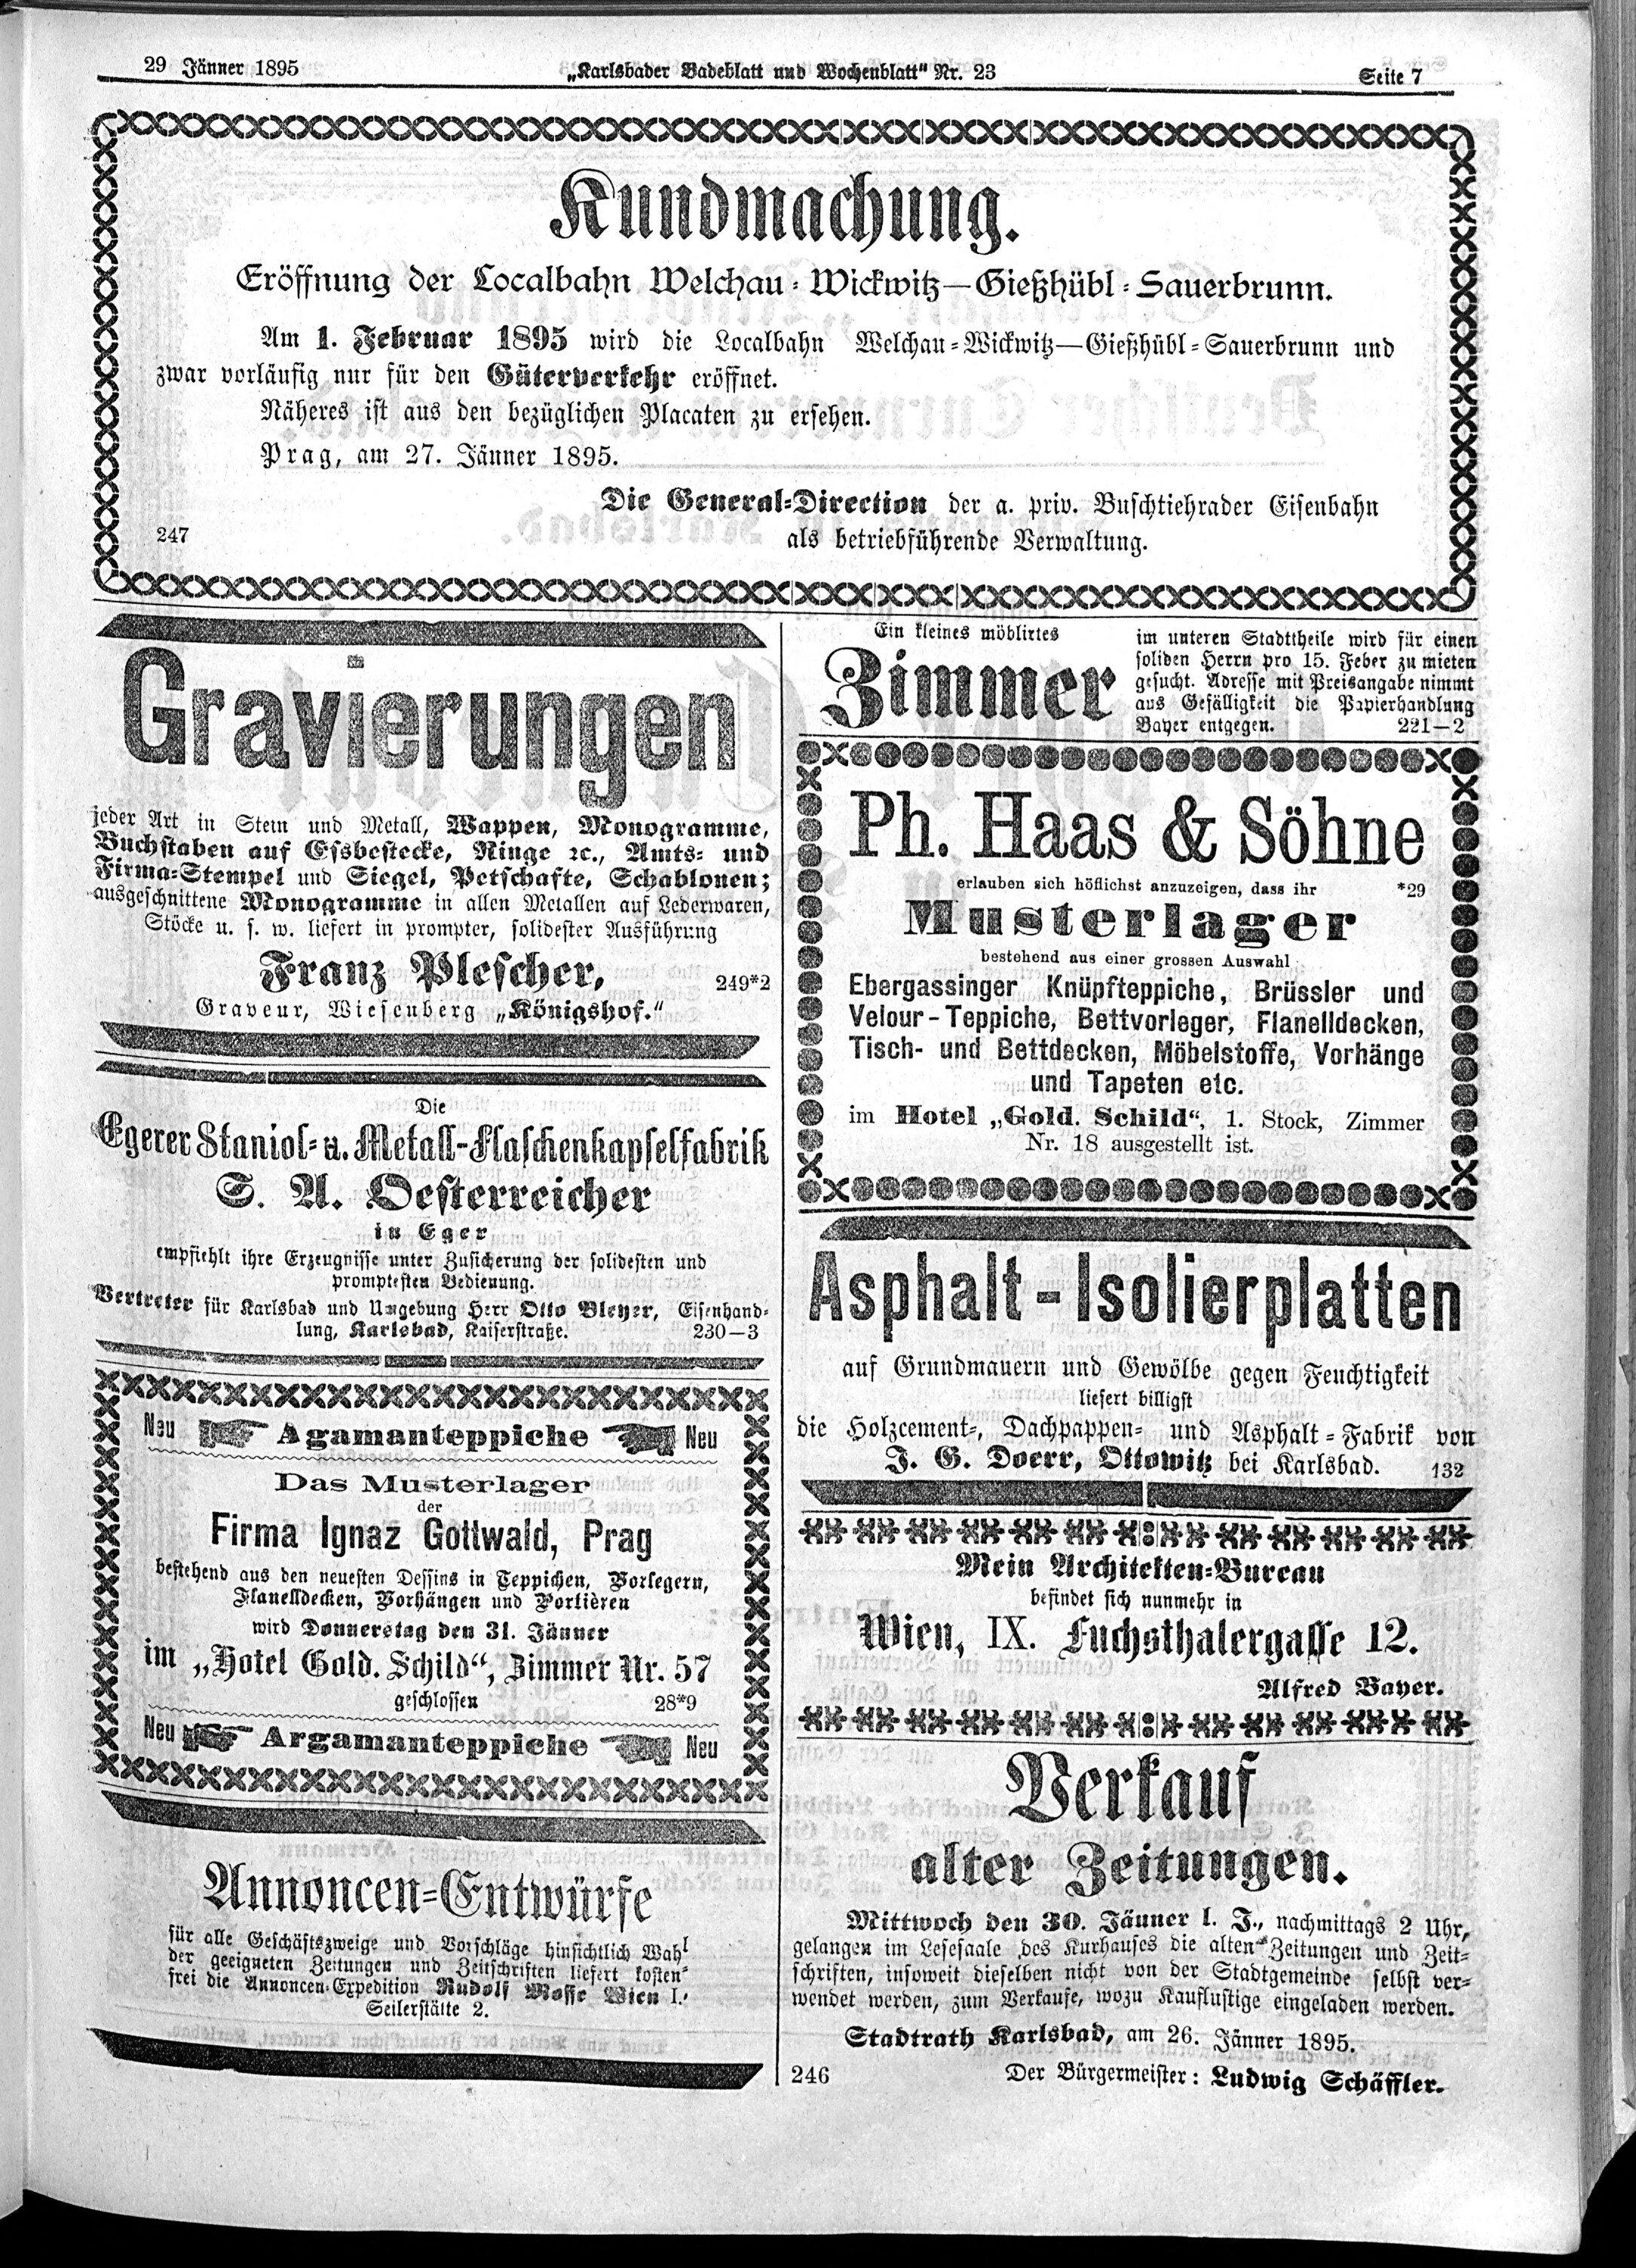 7. karlsbader-badeblatt-1895-01-29-n23_1055